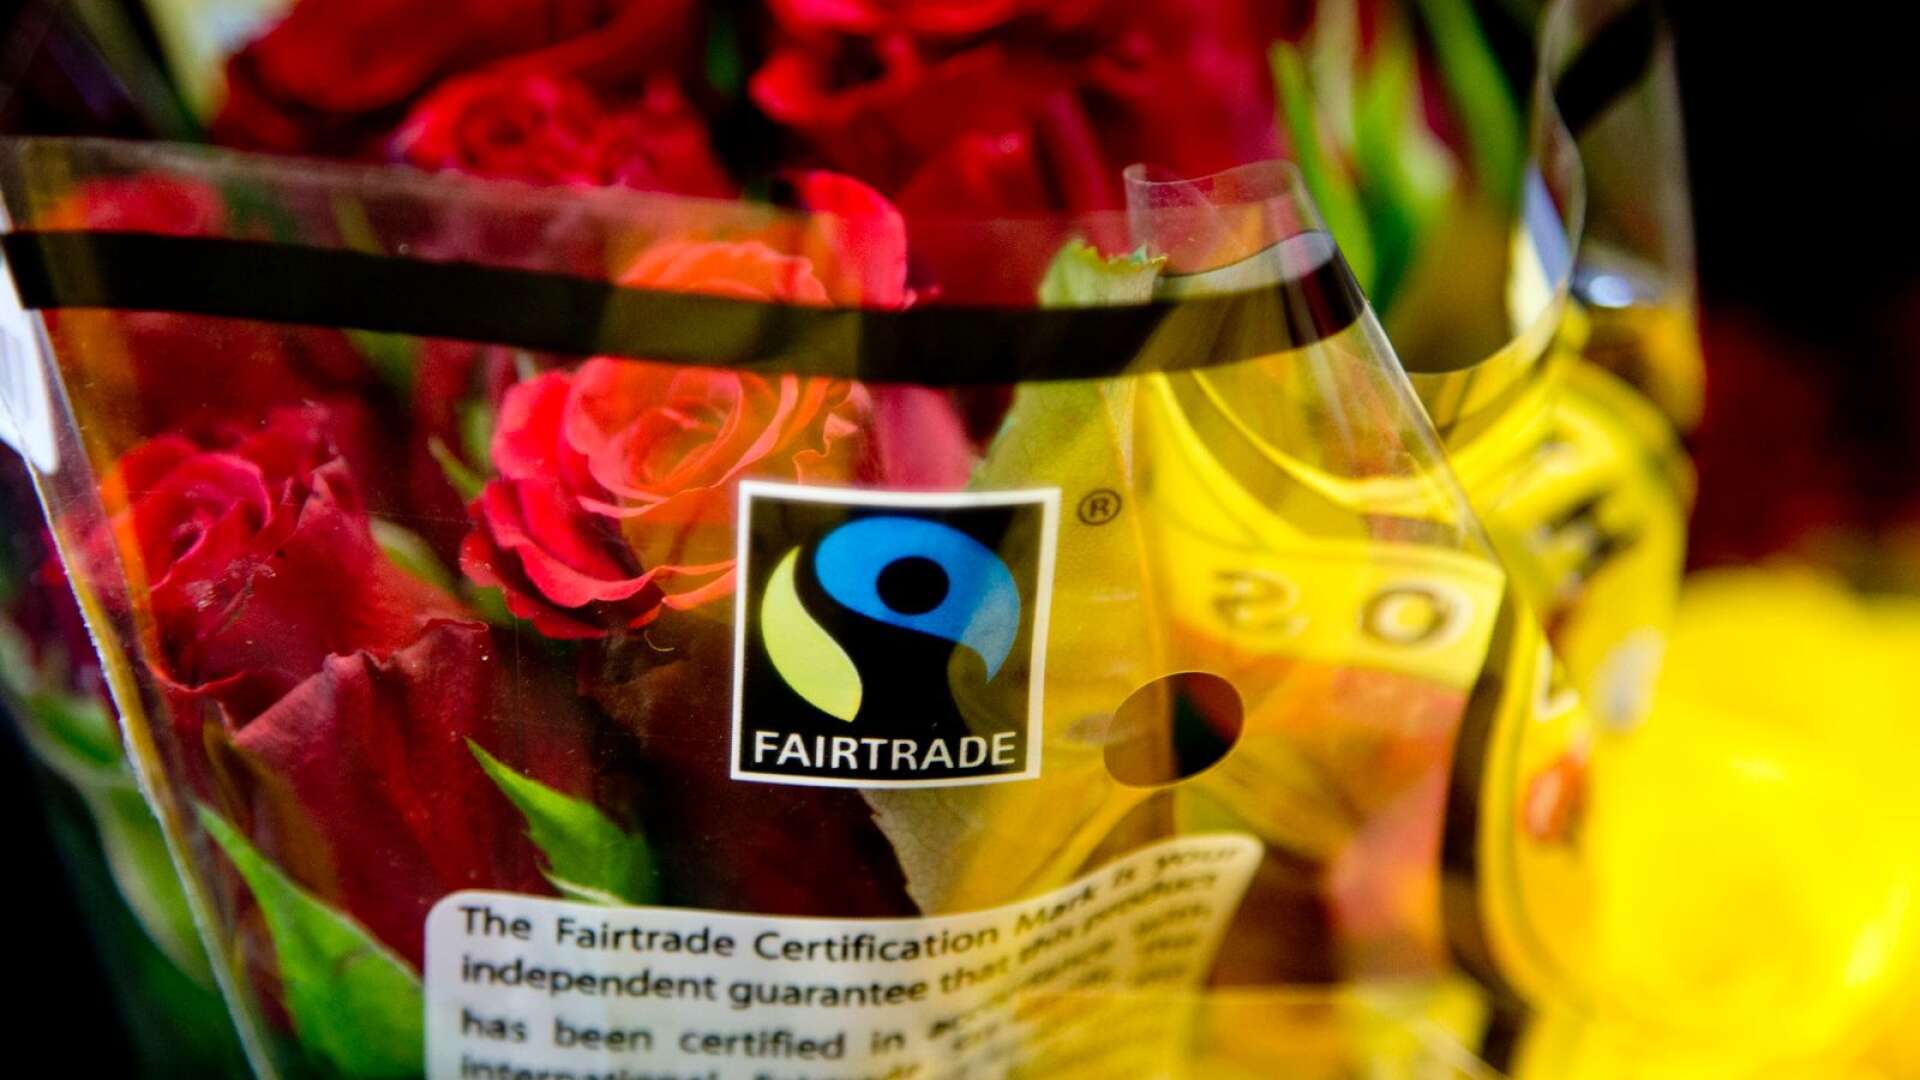 Politiker som är fullt medvetna om vilken skada den fackliga agendan gör för exempelvis arbetslösa, hör Fairtrade tala om sina produkter som ”rättvist handlade” och istället för att ifrågasätta det, köper man det, skriver Blanche Sande. Foto Adam Ihse/TT